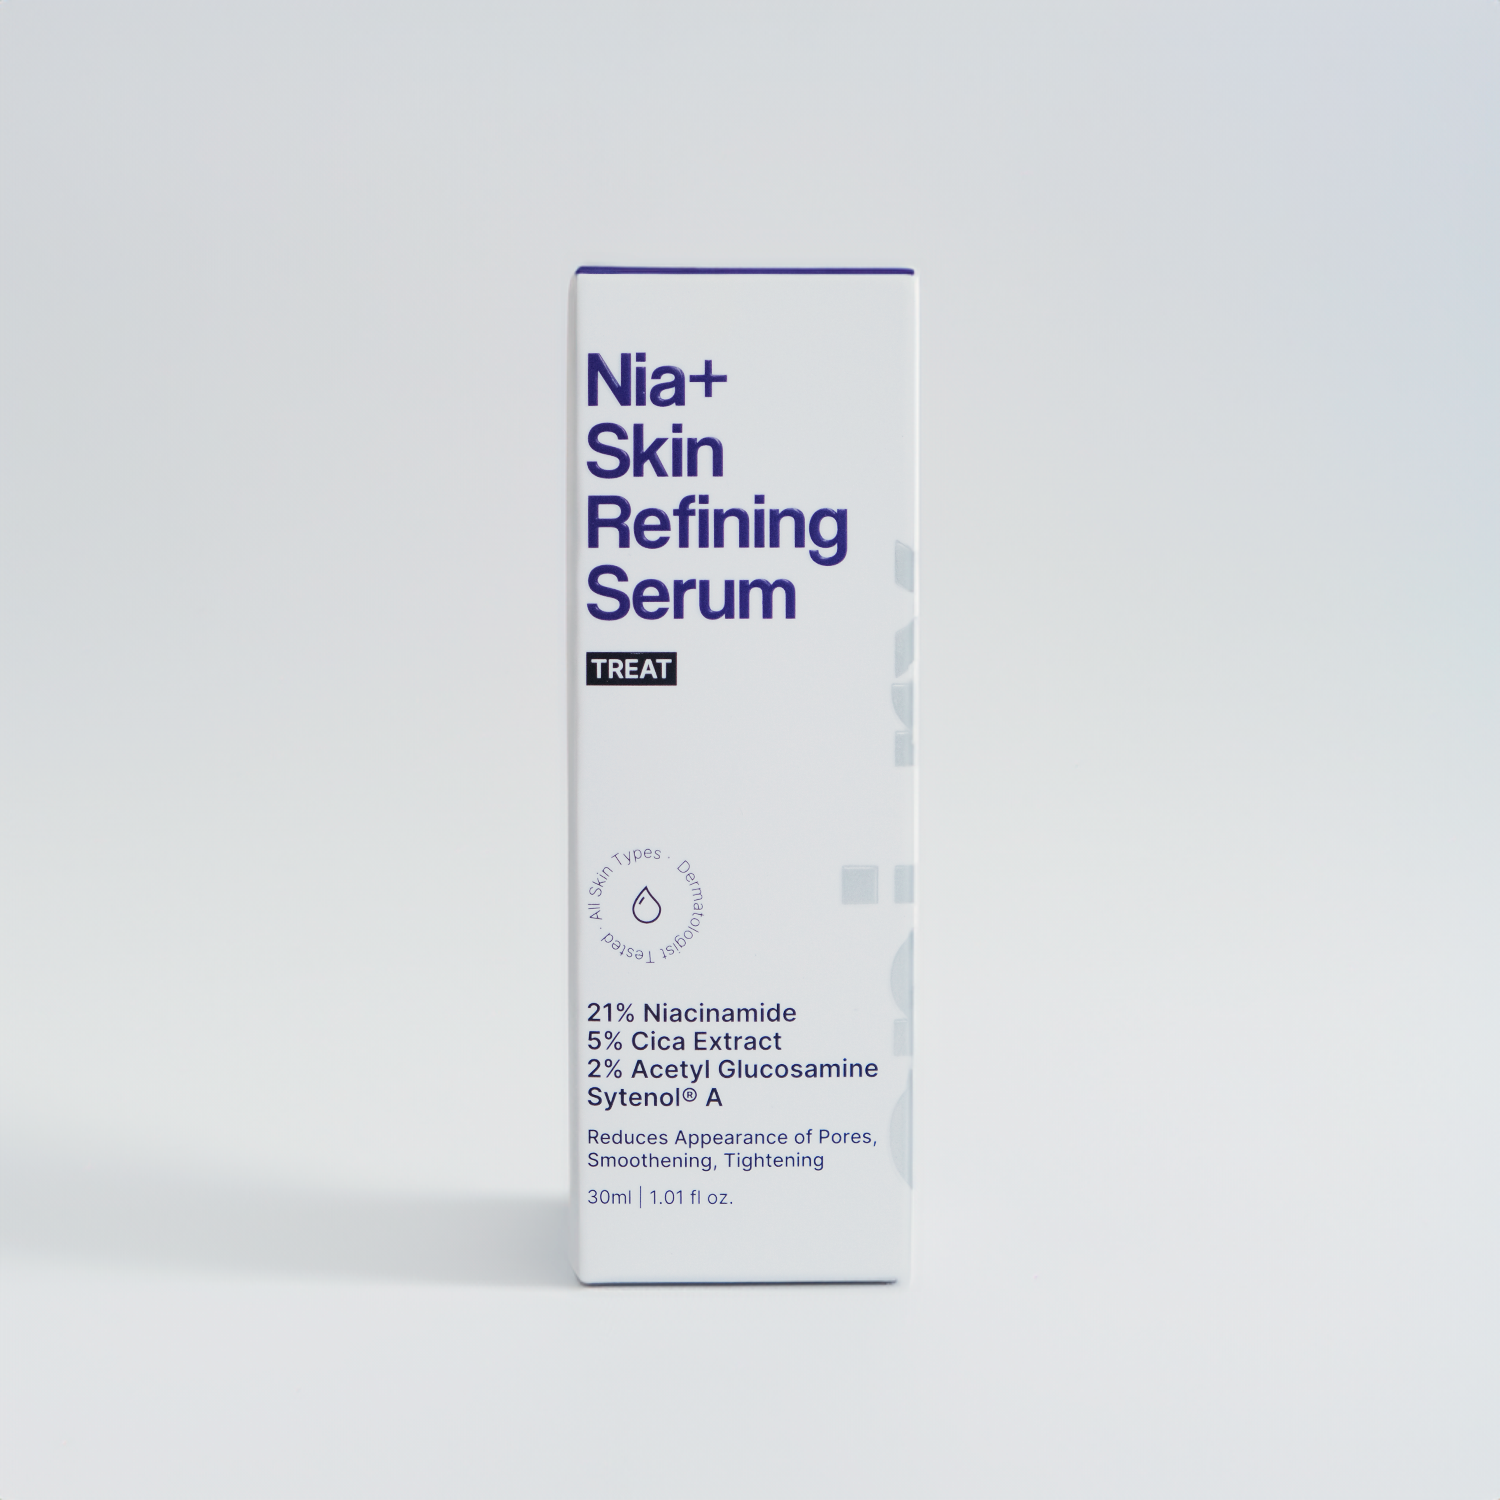 Nia+ Skin Refining Serum